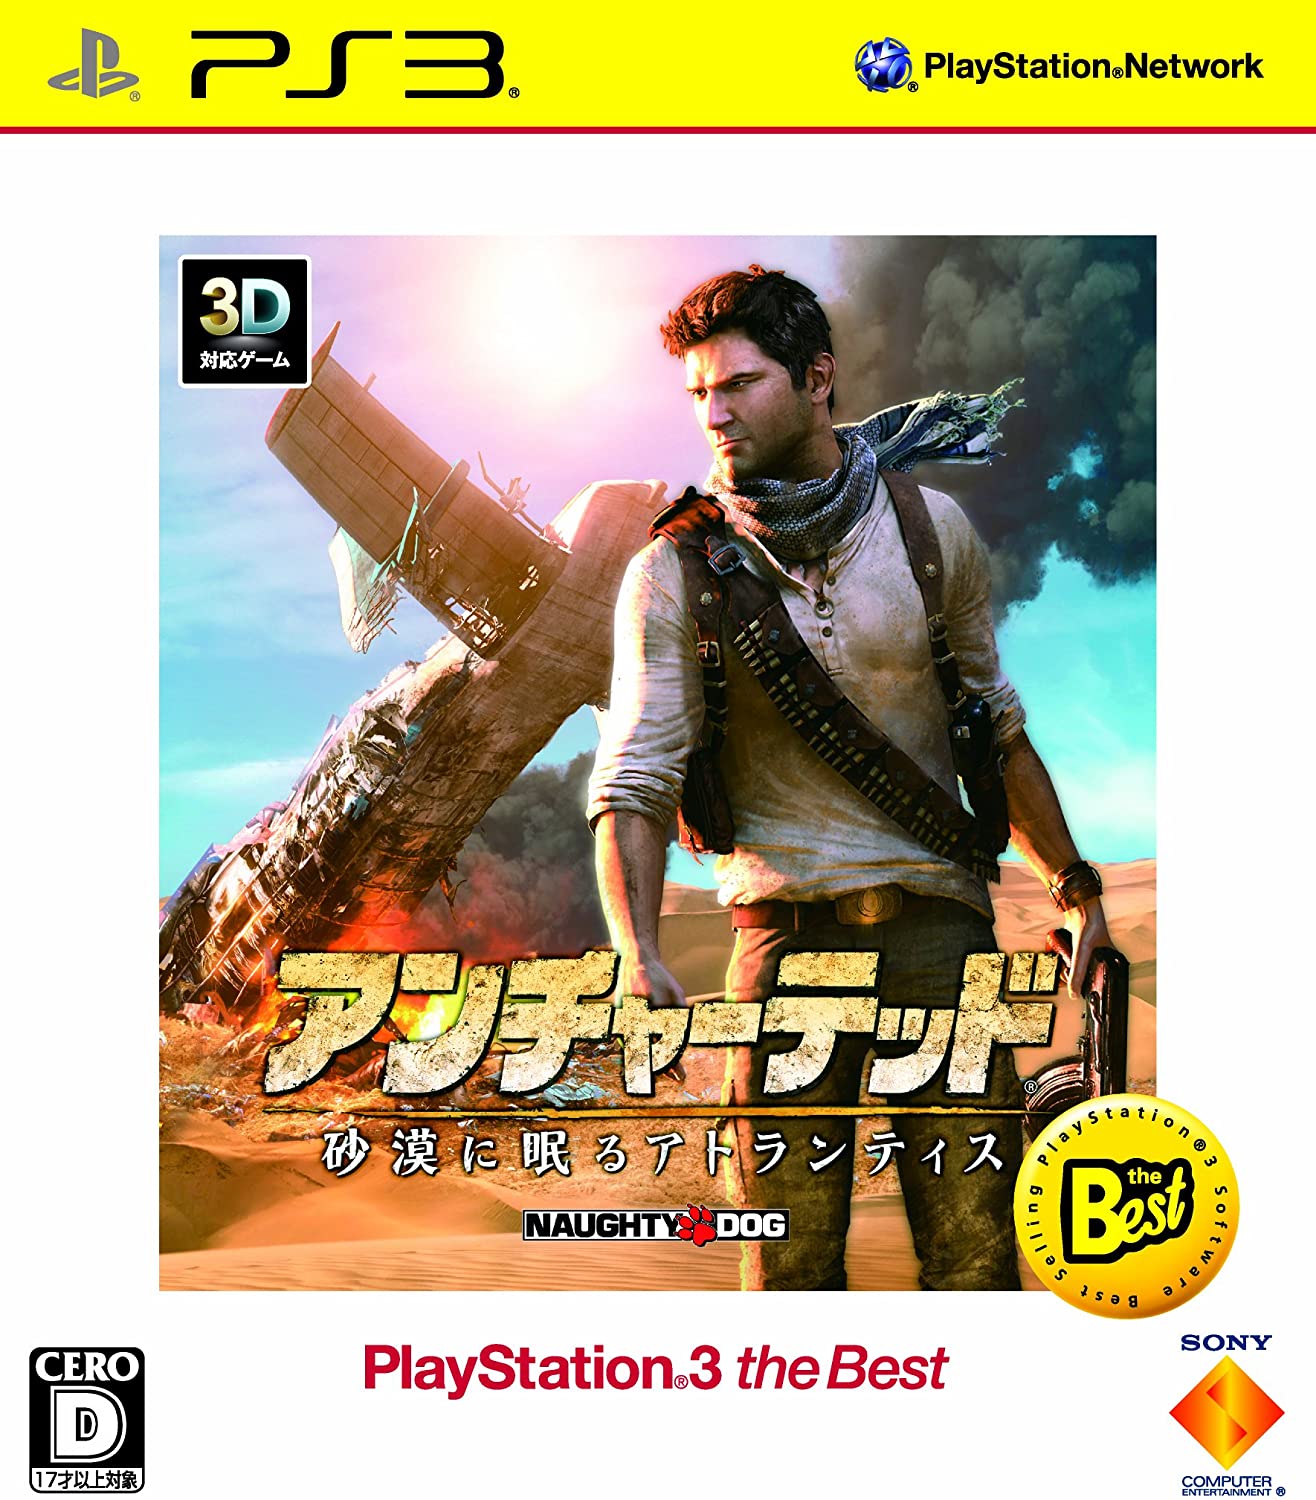      PS3 vCXe[V3 A`[ebh -ɖAgeBX- PlayStation 3 the Best - PS3